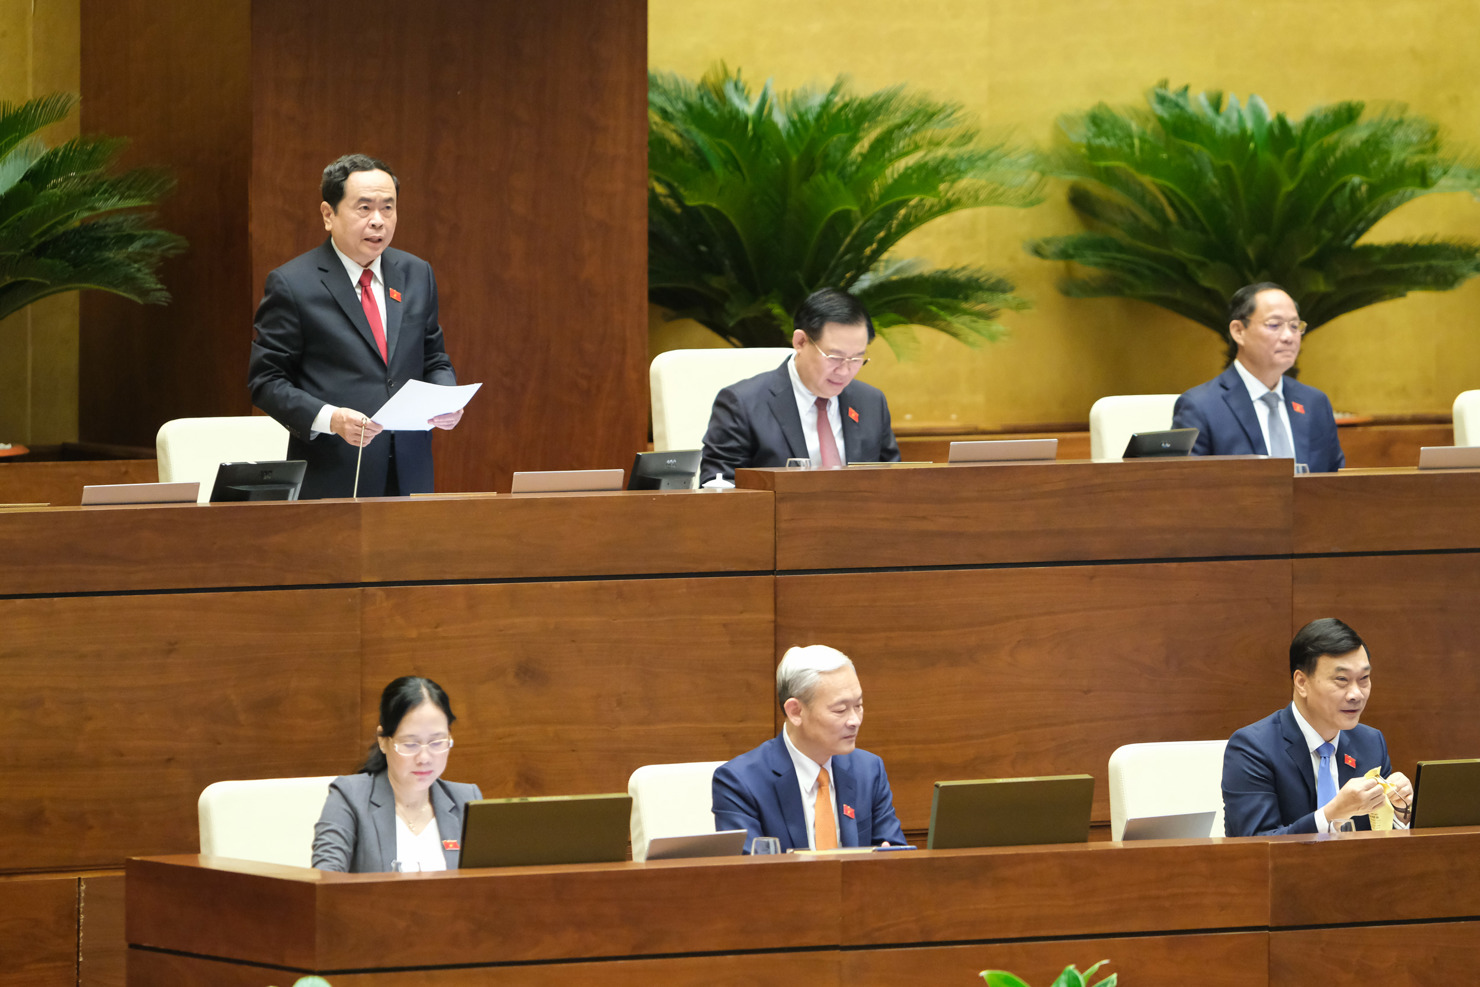 Phó Chủ tịch Thường trực Quốc hội Trần Thanh Mẫn phát biểu kết luận phiên thảo luận tại Hội trường sáng ngày 01/6